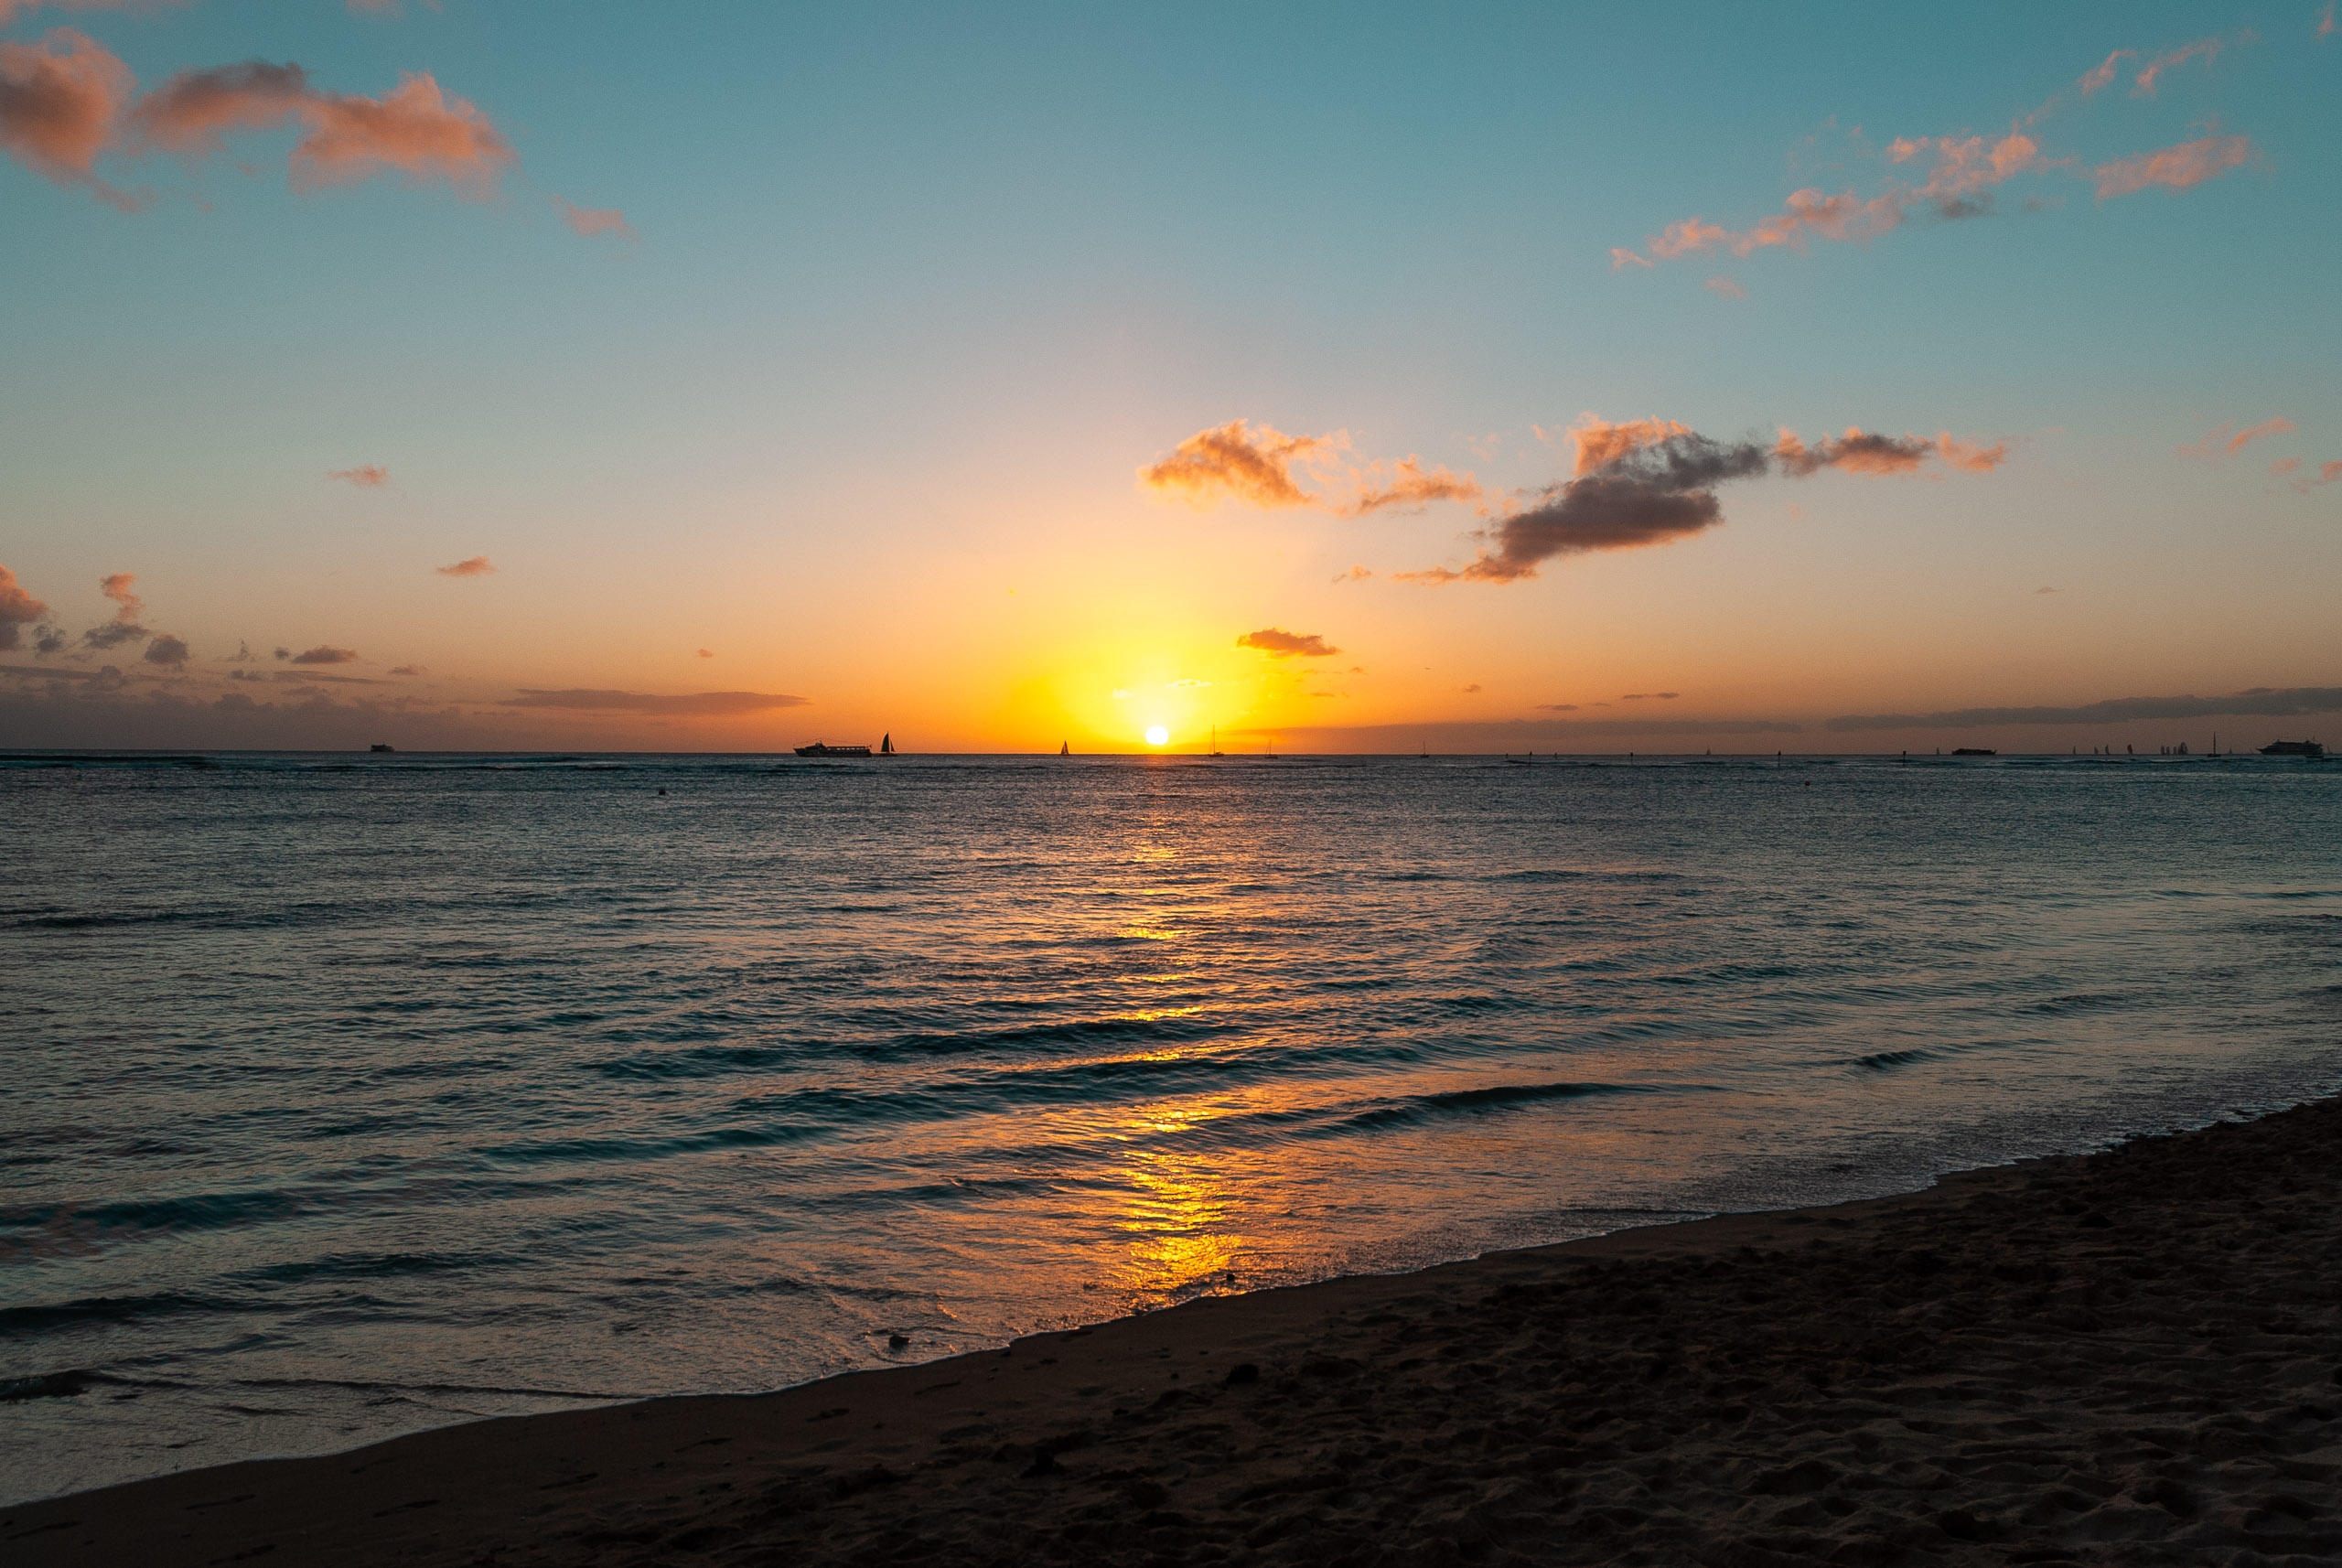 Sunset over Waikiki Beach